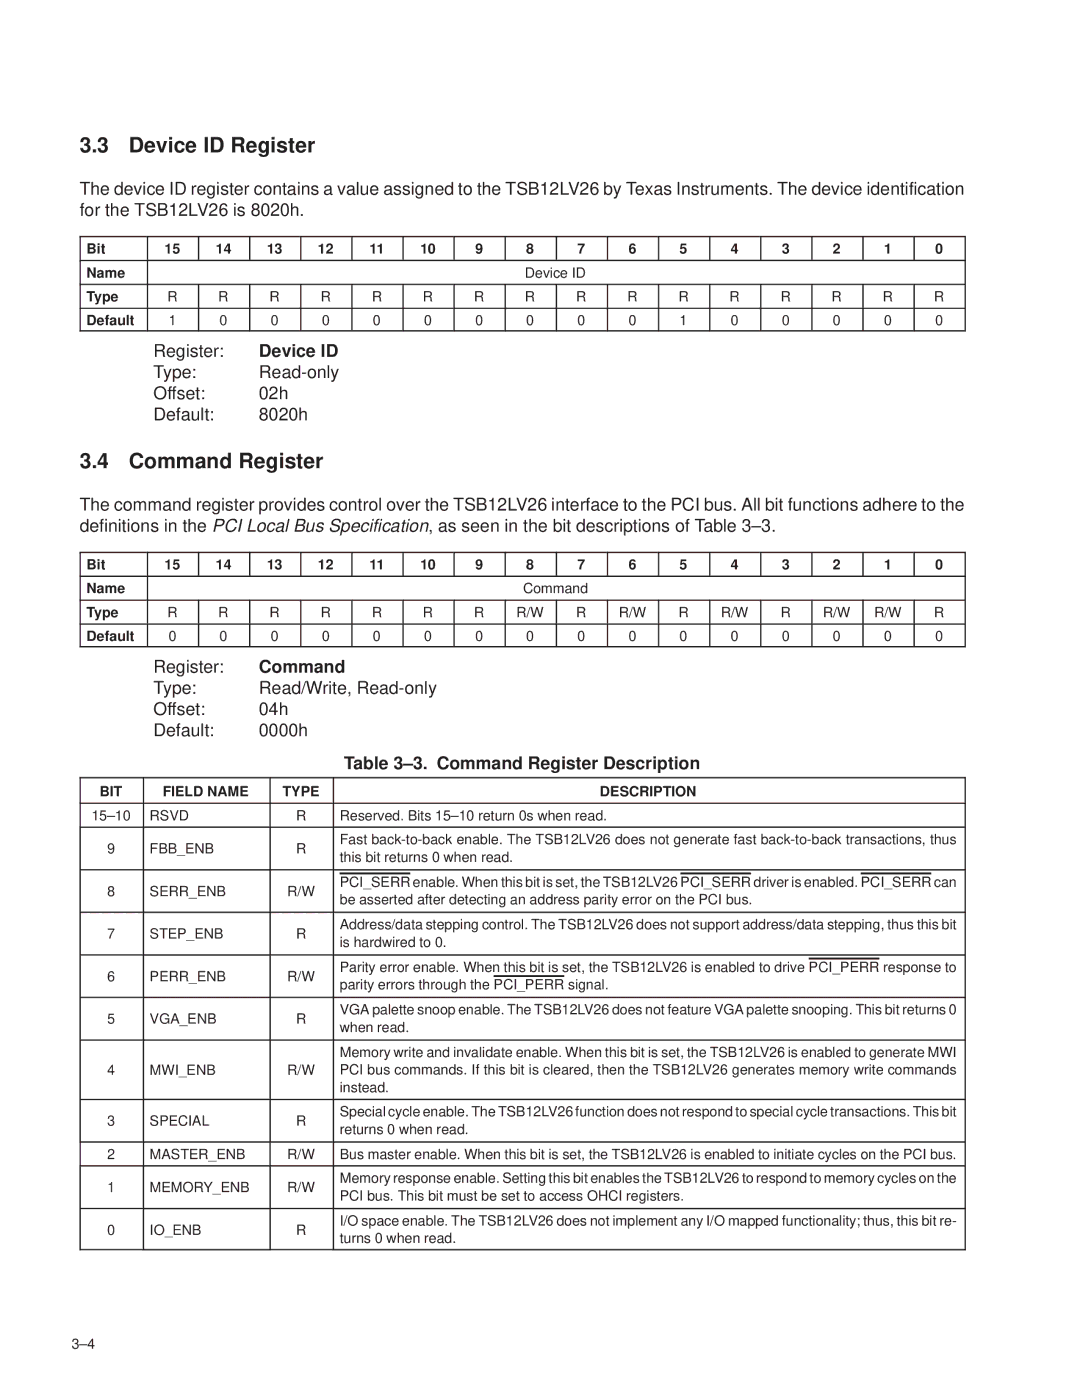 Texas Instruments TSB12LV26 Device ID Register, ±3. Command Register Description, BIT Field Name Type Description 